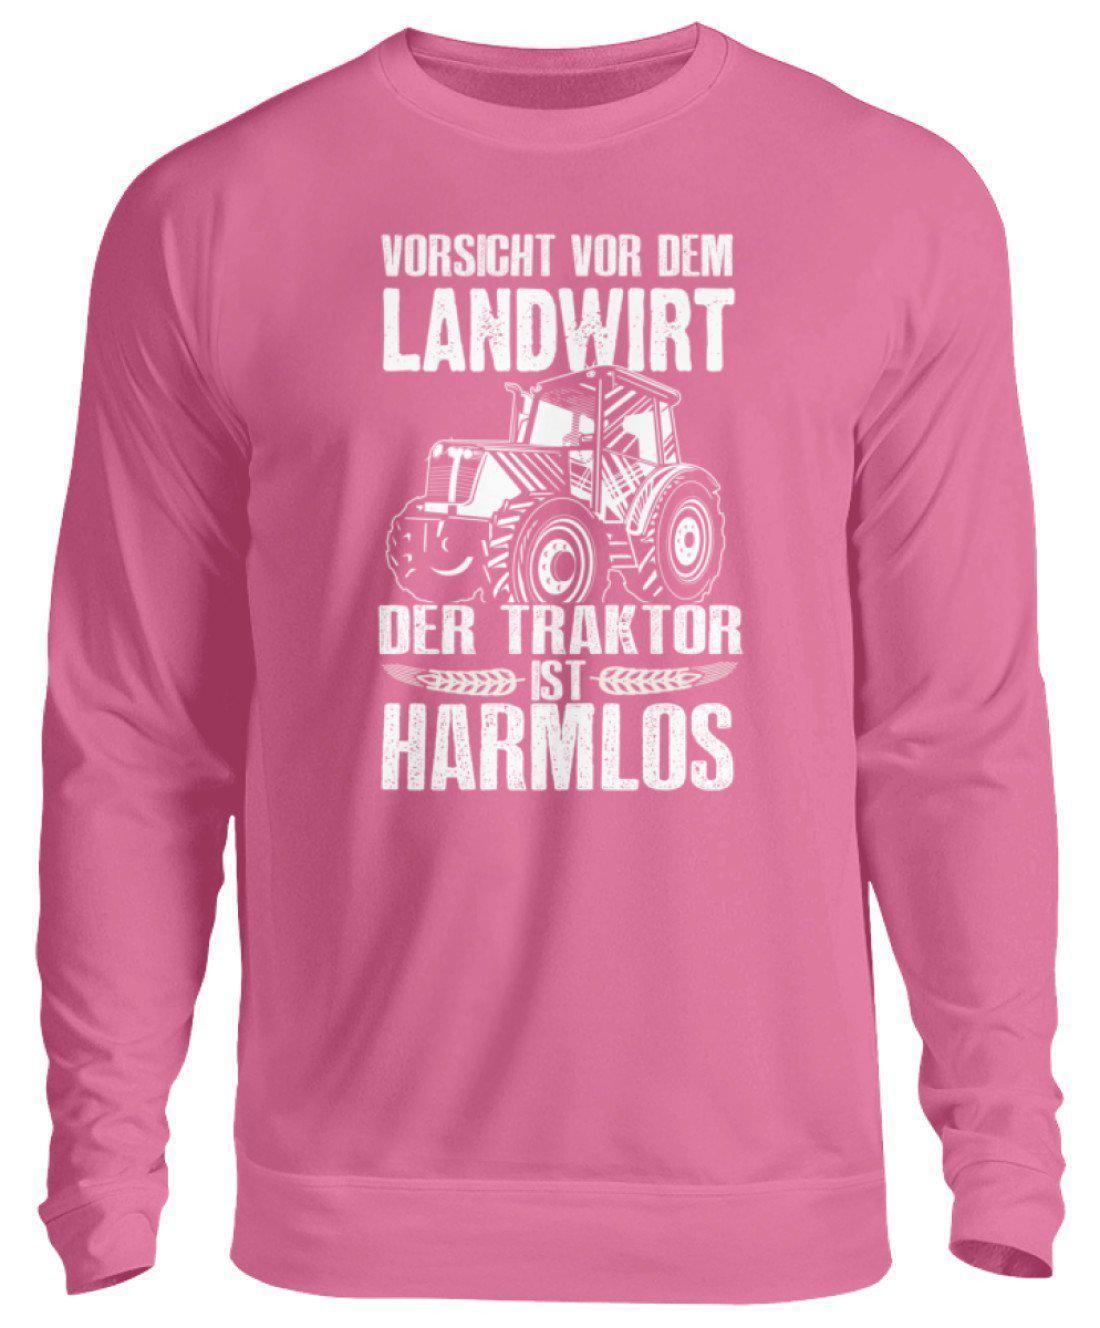 Der Traktor ist harmlos · Unisex Sweatshirt Pullover-Unisex Sweatshirt-Candyfloss Pink-S-Agrarstarz